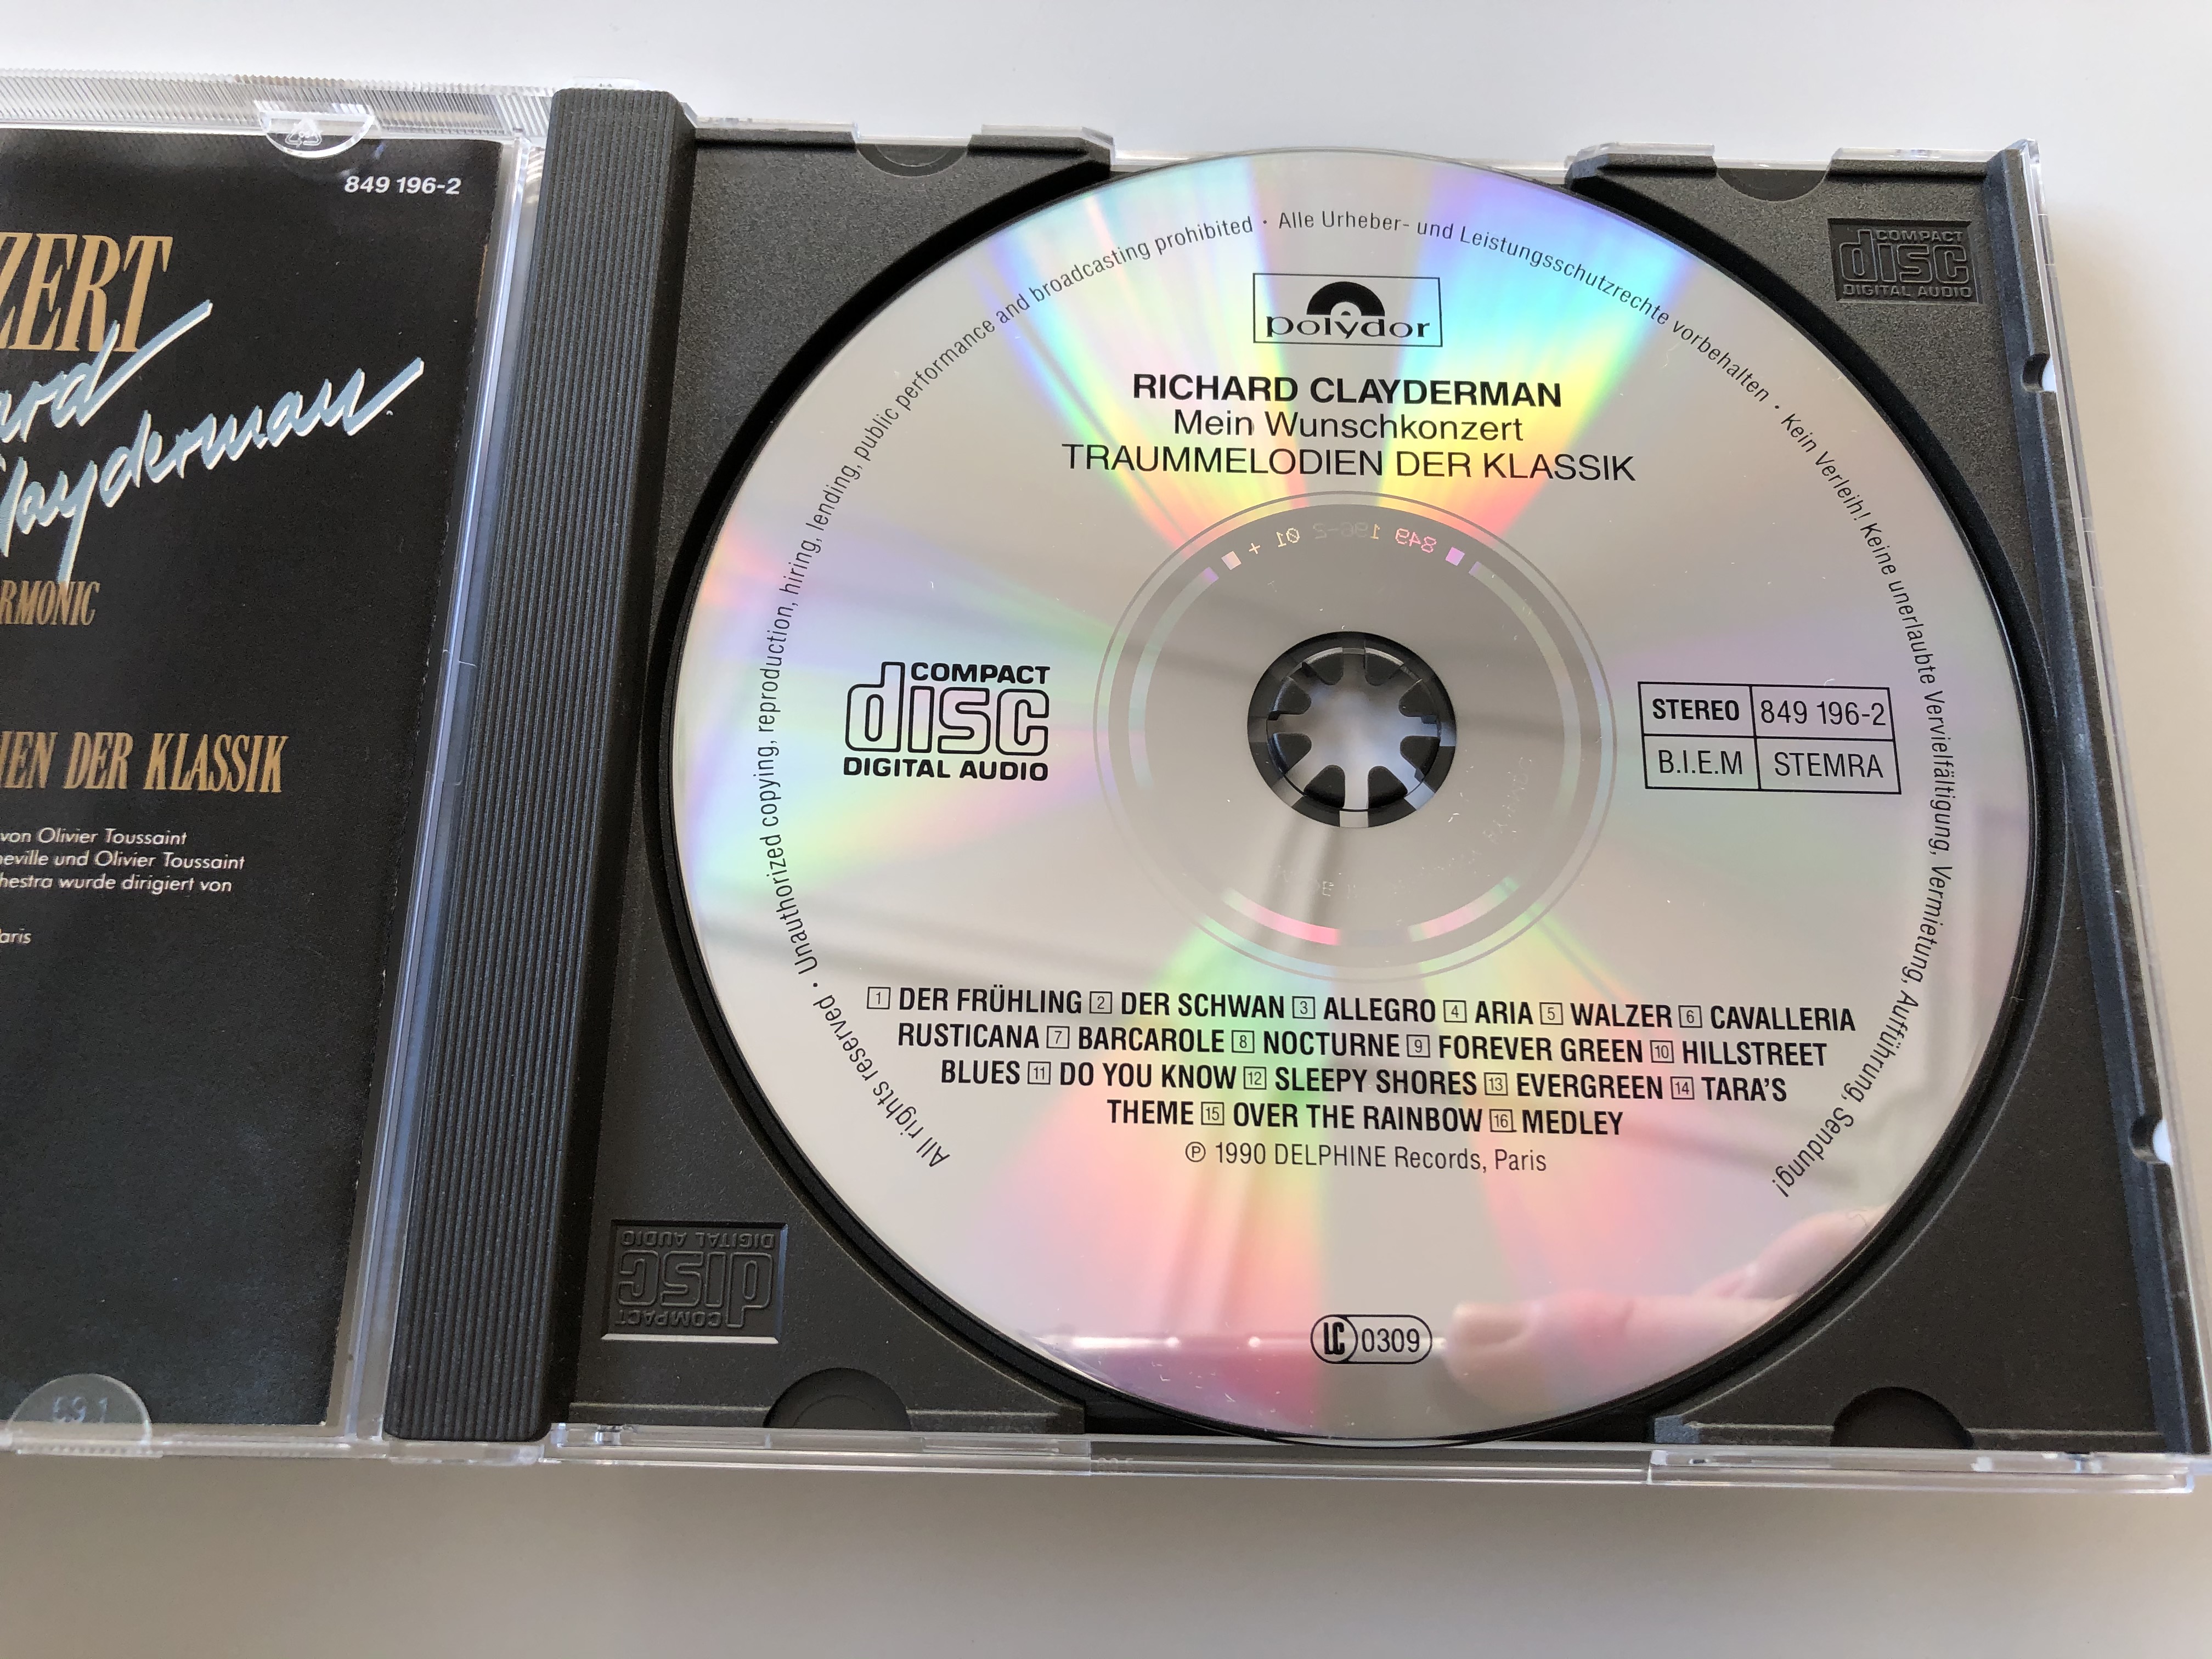 richard-clayderman-mein-wunschkonzert-und-das-royal-philharmonic-orchstra-traummelodien-der-klassik-polydor-audio-cd-1990-stereo-849-196-2-4-.jpg